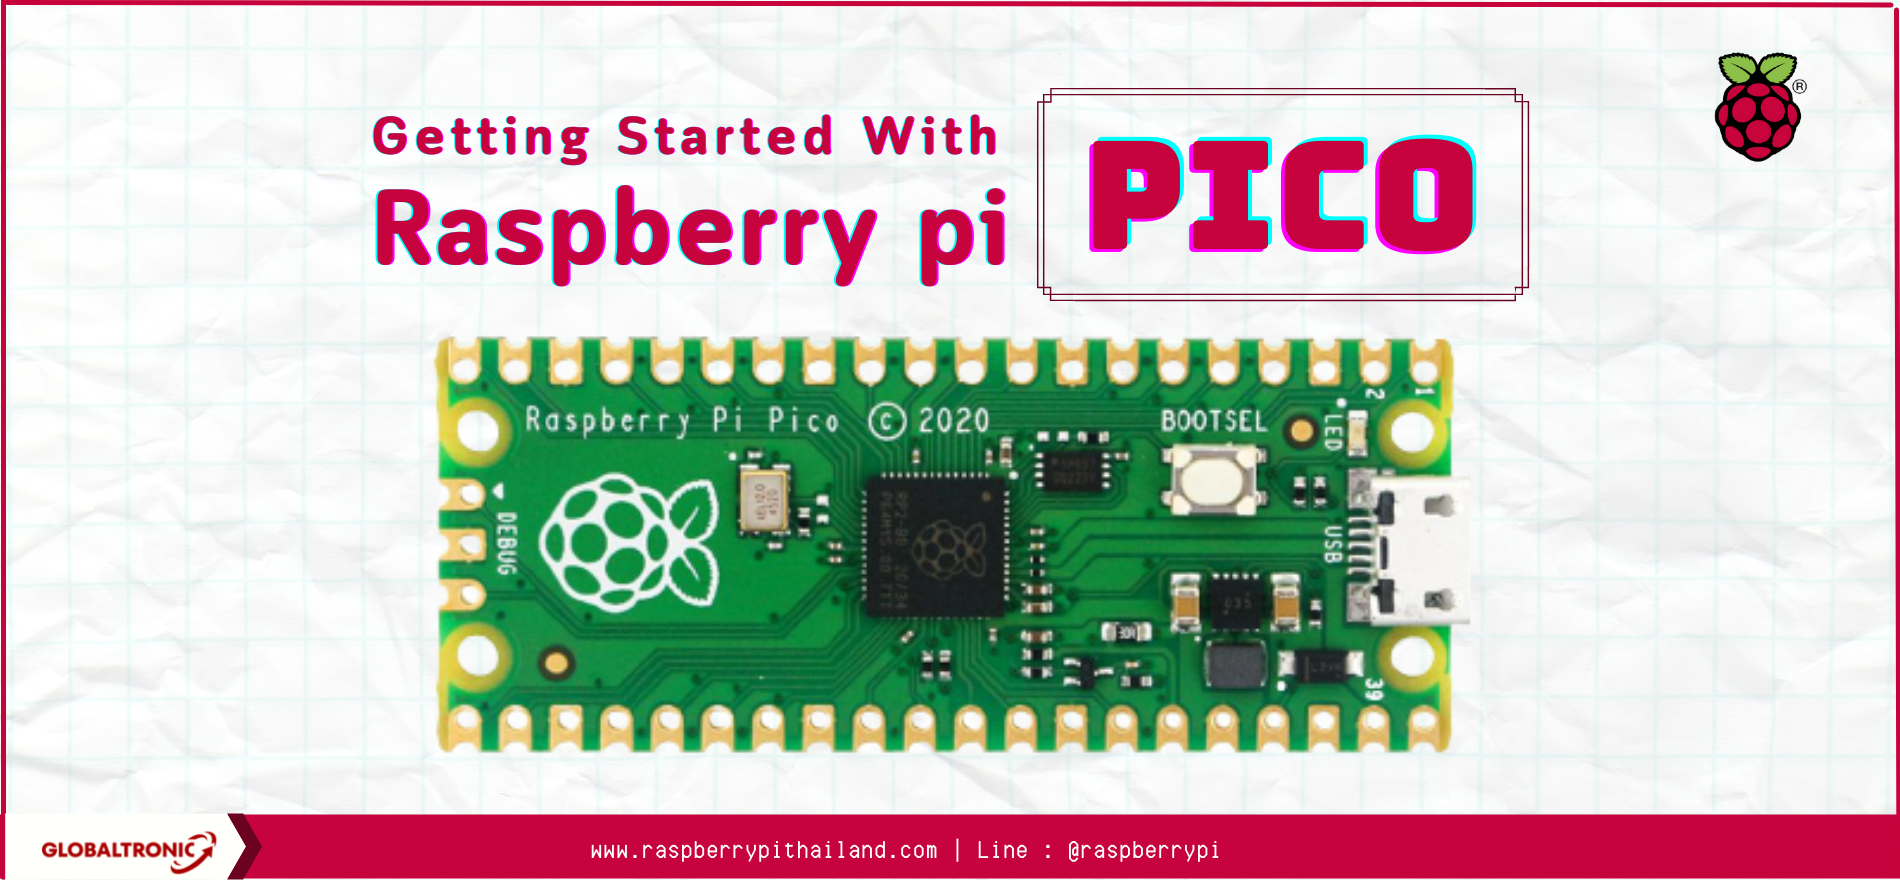 Raspberry pi pico